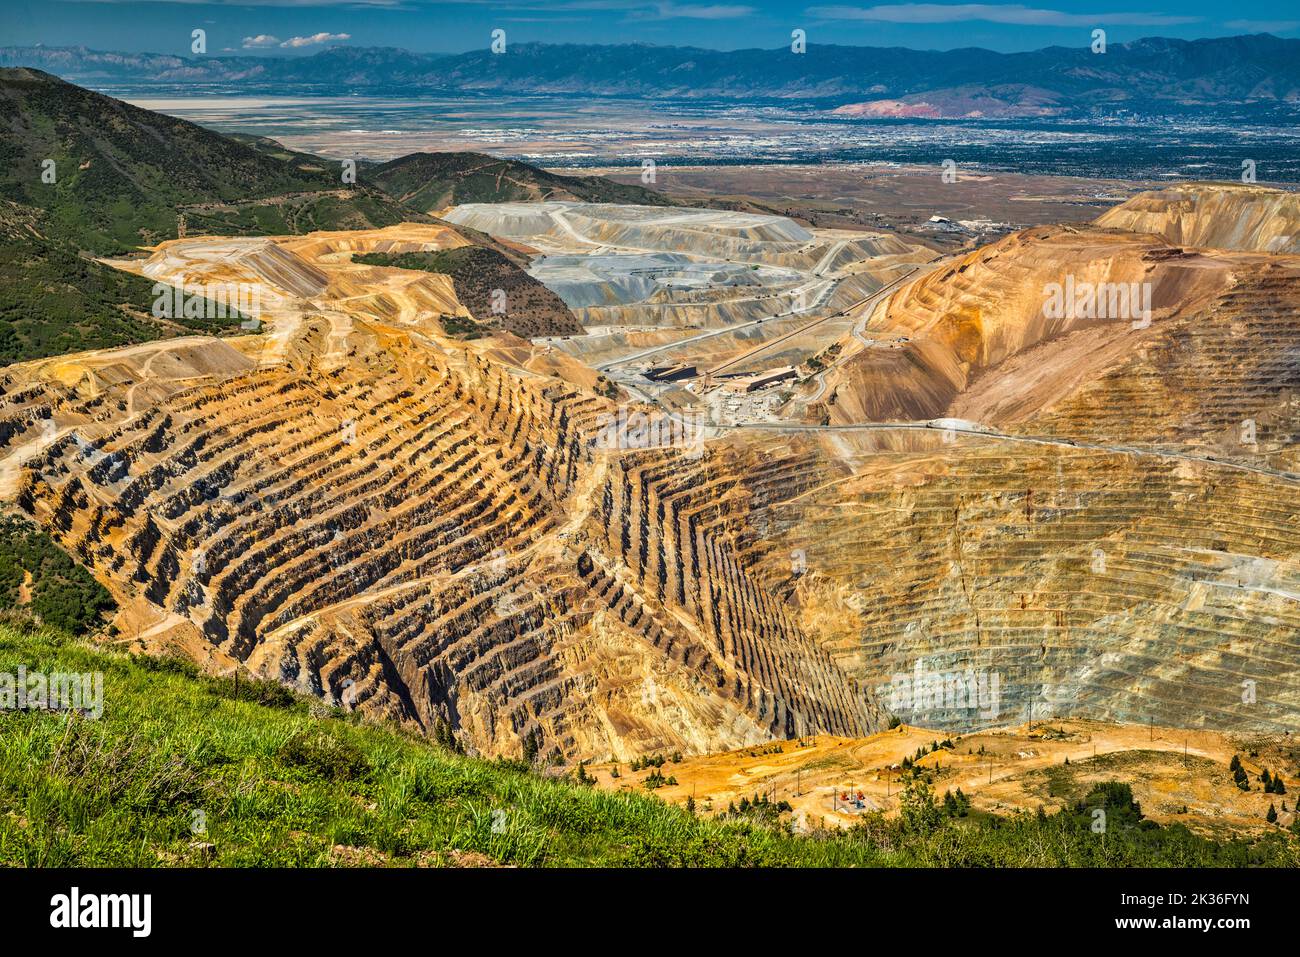 Tagebau bei der Kennecott Copper Mine alias Bingham Canyon Mine, Salt Lake City Downtown in dist, West Mountain Overlook, Oquirrh Mtns, Utah, USA Stockfoto